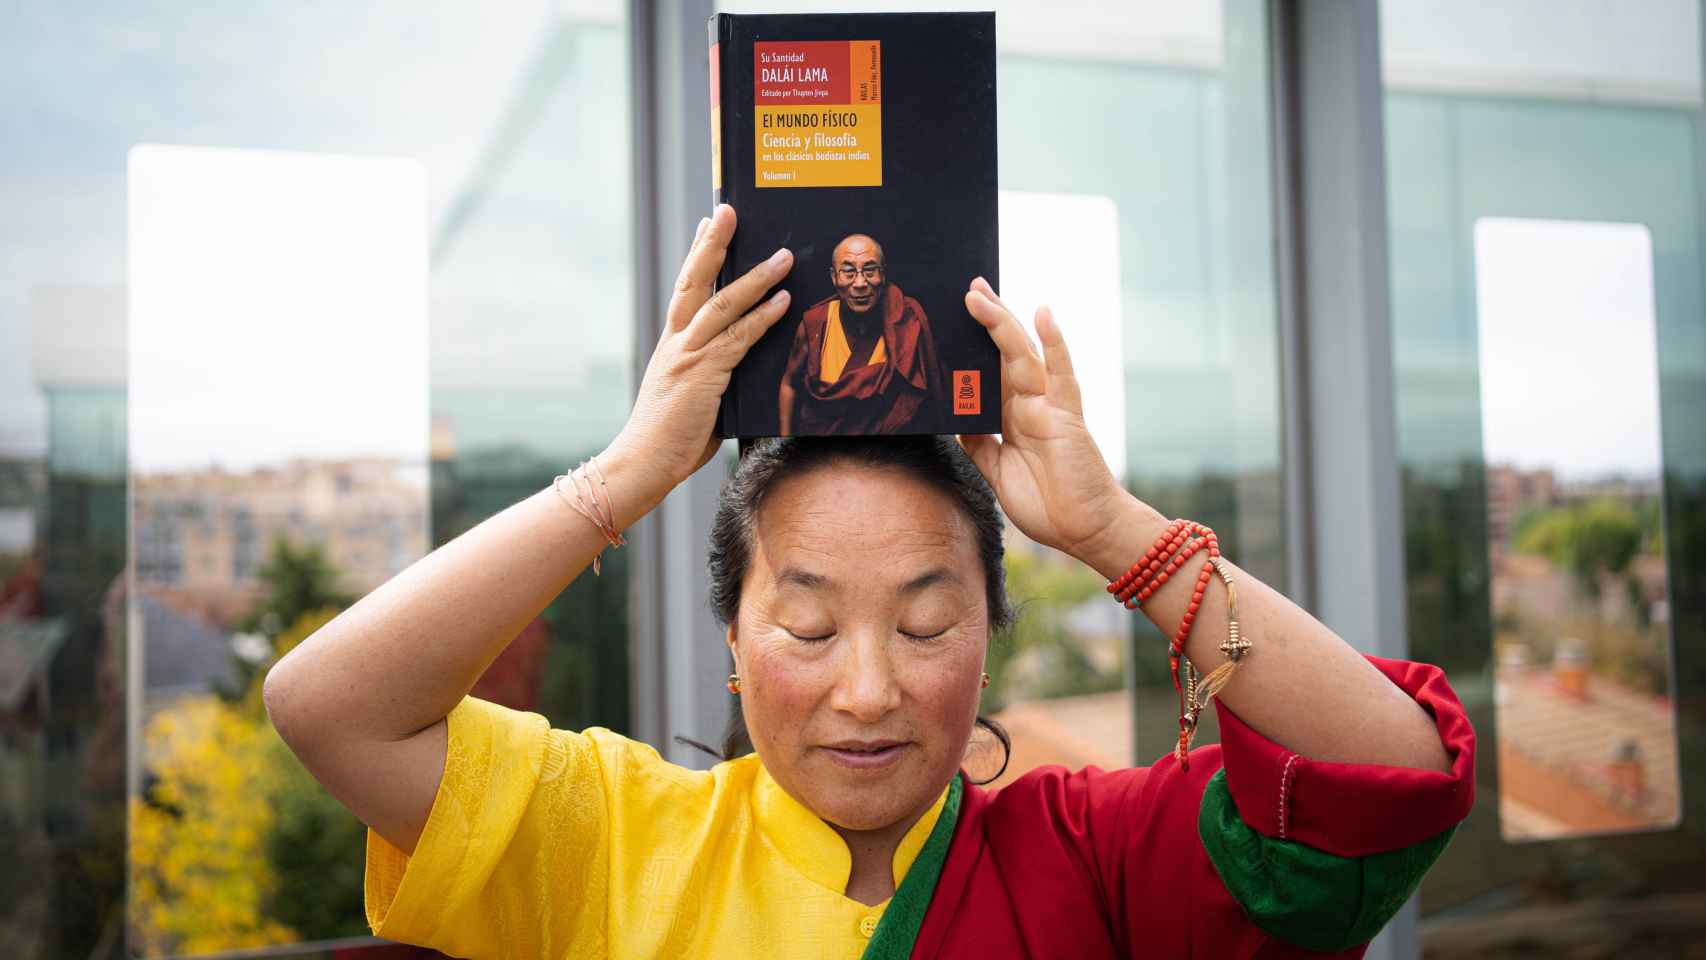 Khadro-la sostiene un libro del Dalái Lama sobre su cabeza